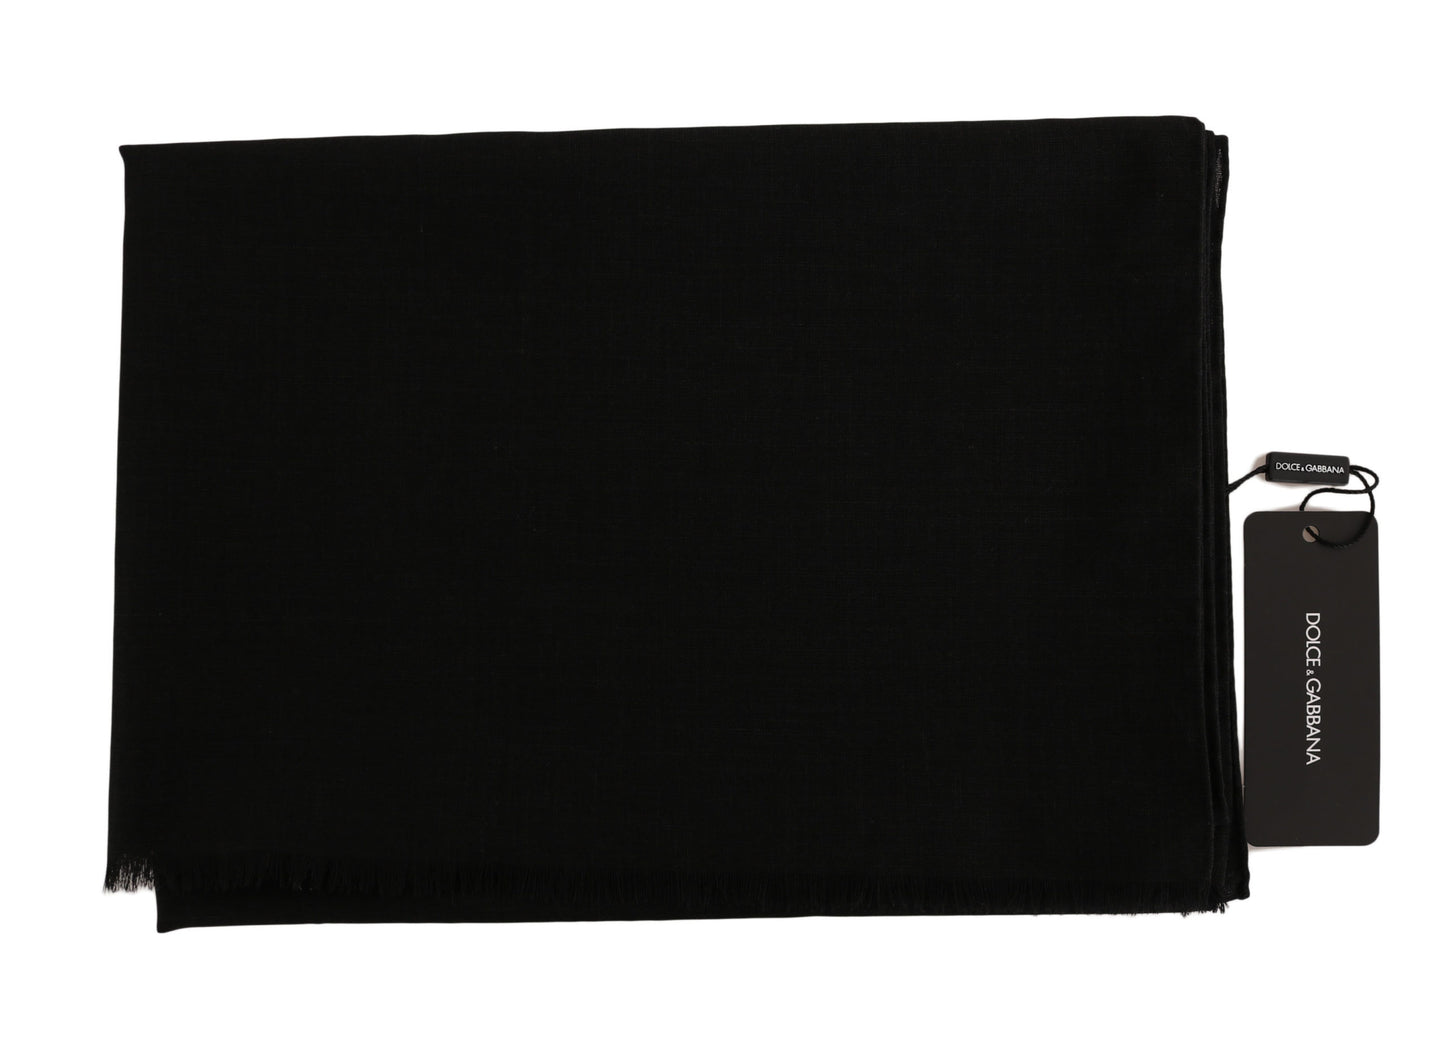 Dolce & Gabbana Solid Black Wool Blend Shawl Wrap 70cm X 200cm Scarf - DEA STILOSA MILANO